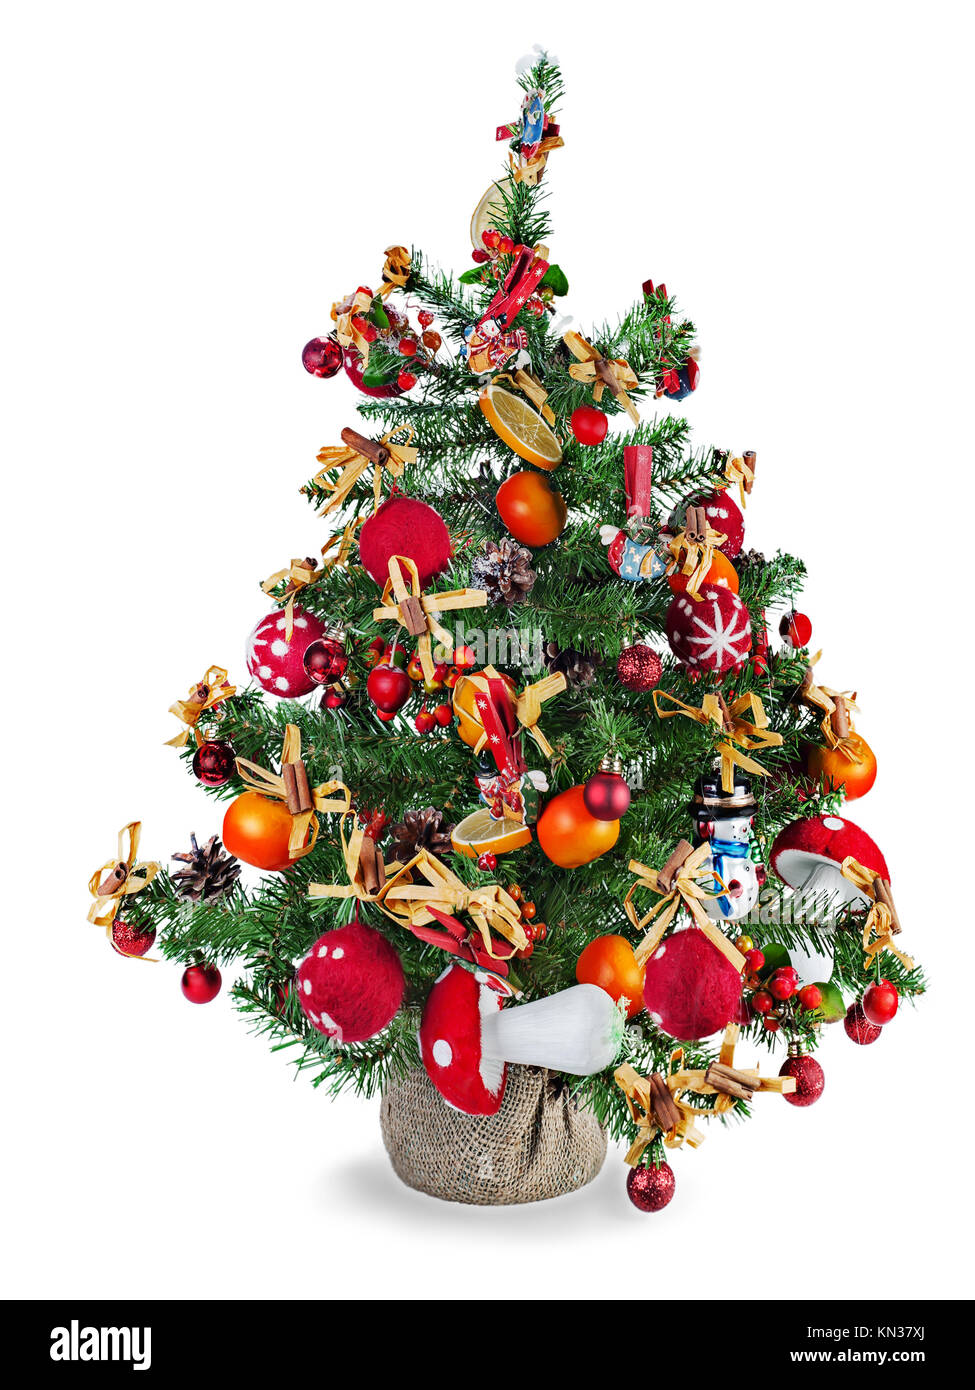 Weihnachten Tannenbaum Geschmuckt Mit Spielzeug Und Weihnachtsschmuck Isoliert Auf Weissem Hintergrund Stockfotografie Alamy